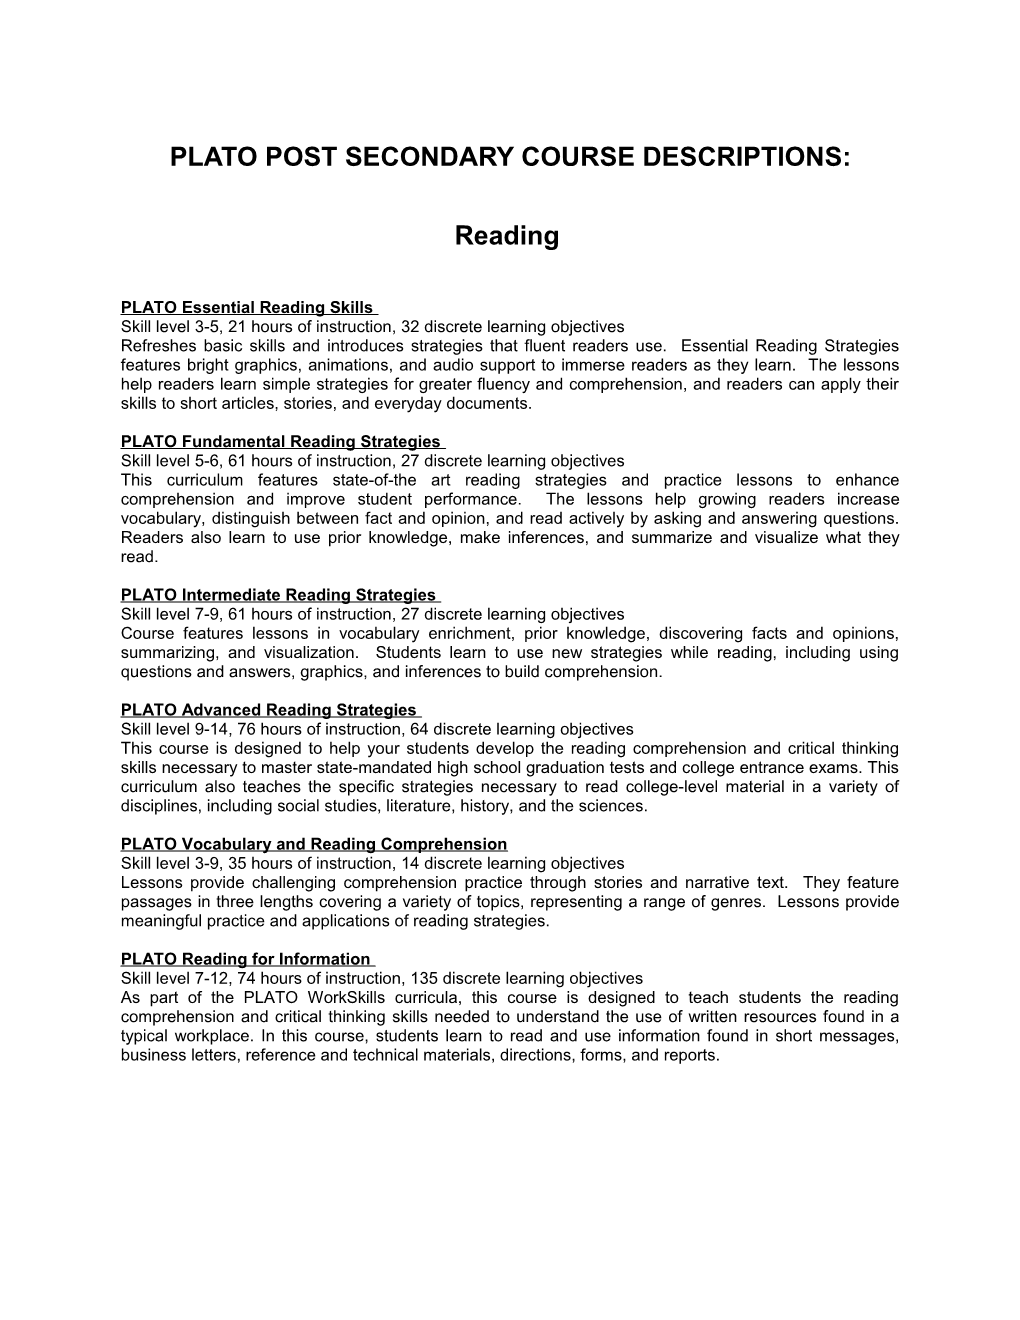 Plato Post Secondary Course Descriptions